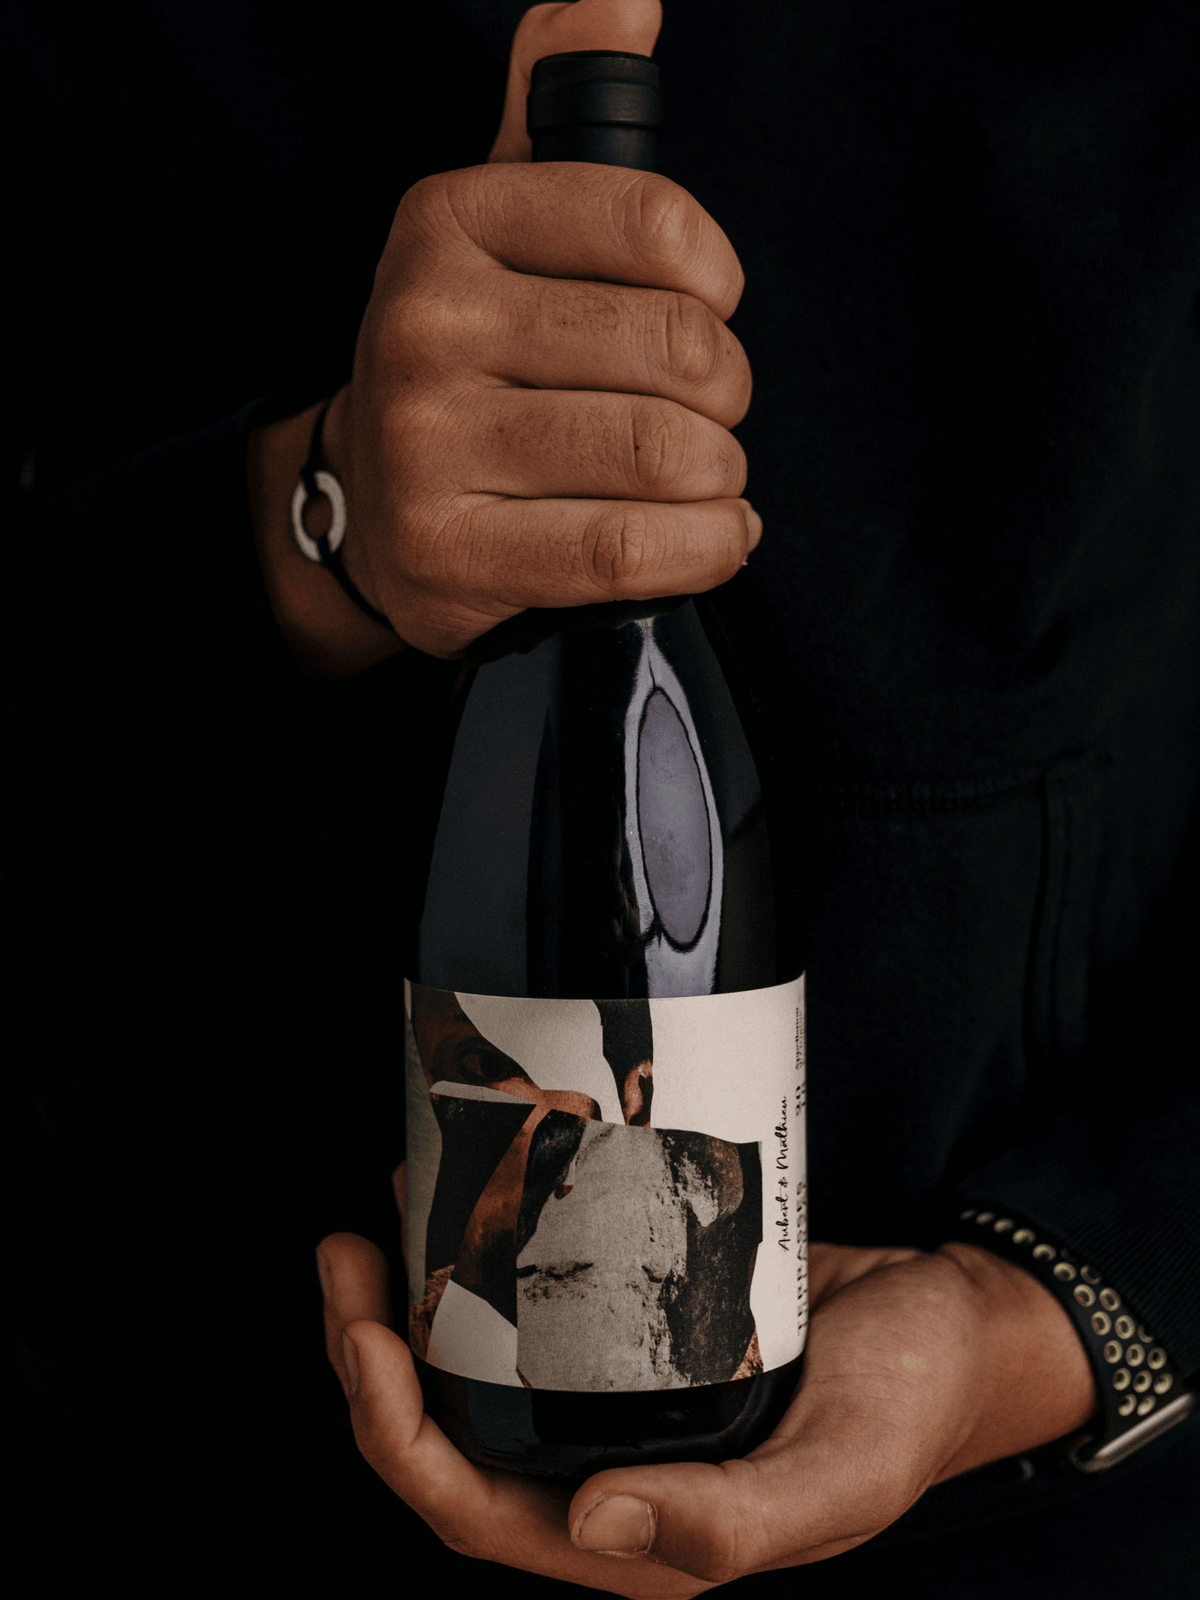 Bazile 2019 - vin rouge des Terrasses du Larzac - Aubert et Mathieu